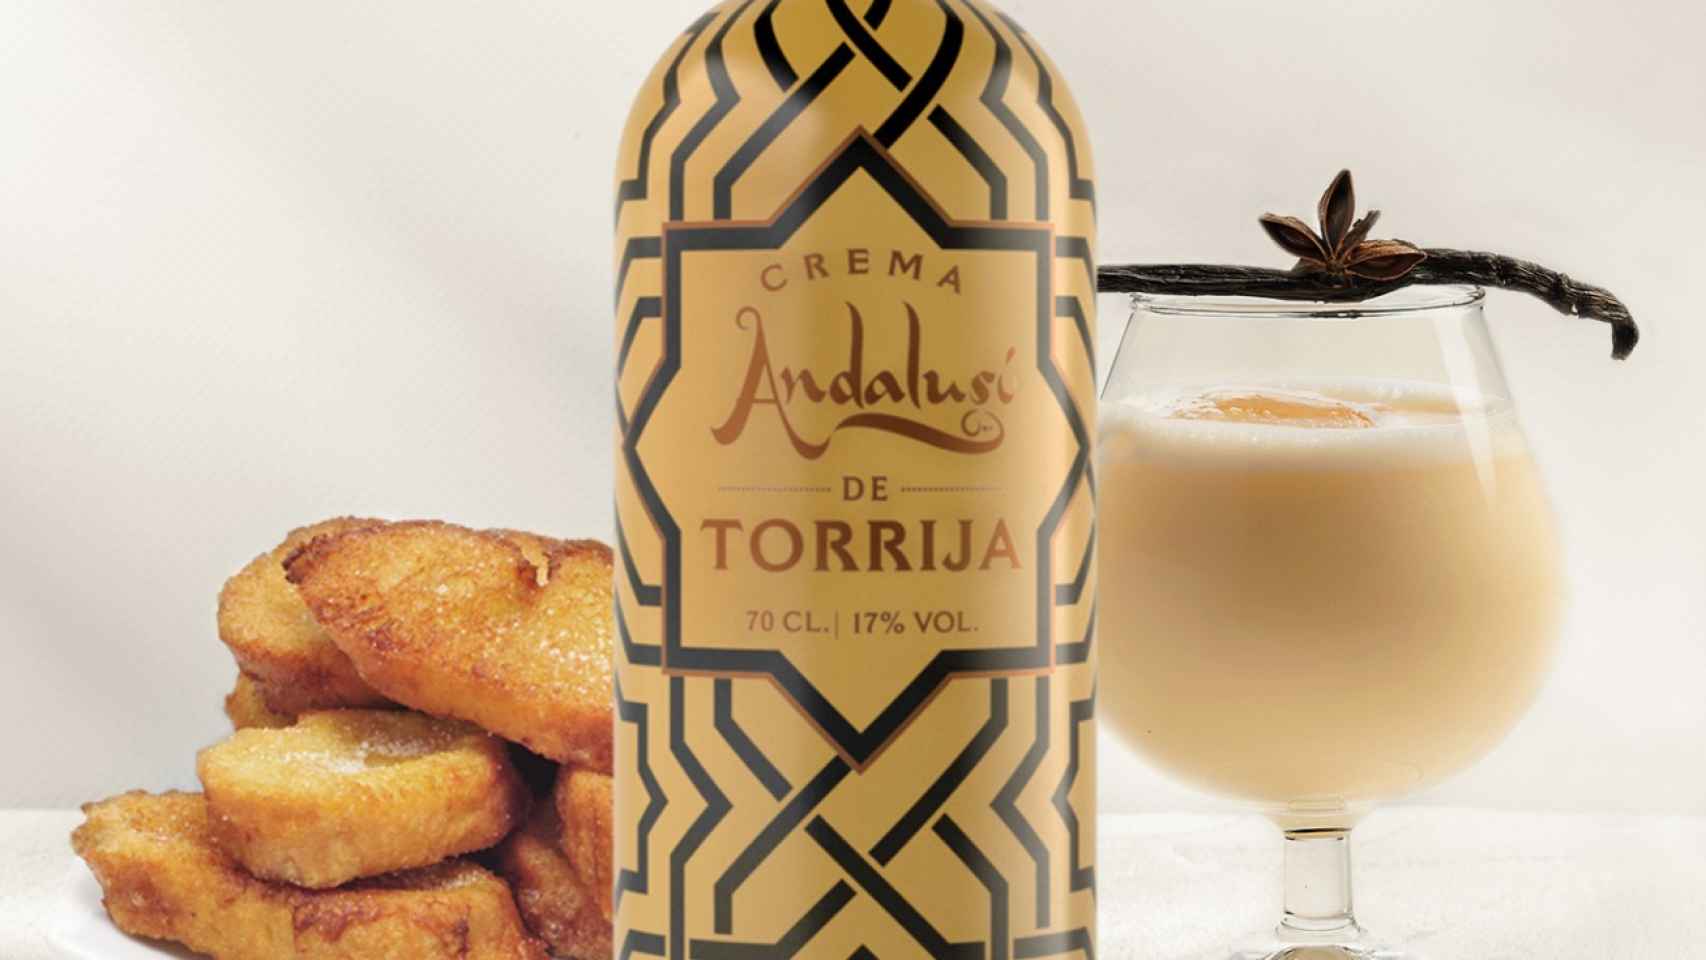 Crema de torrija de Andalusí Beverages.